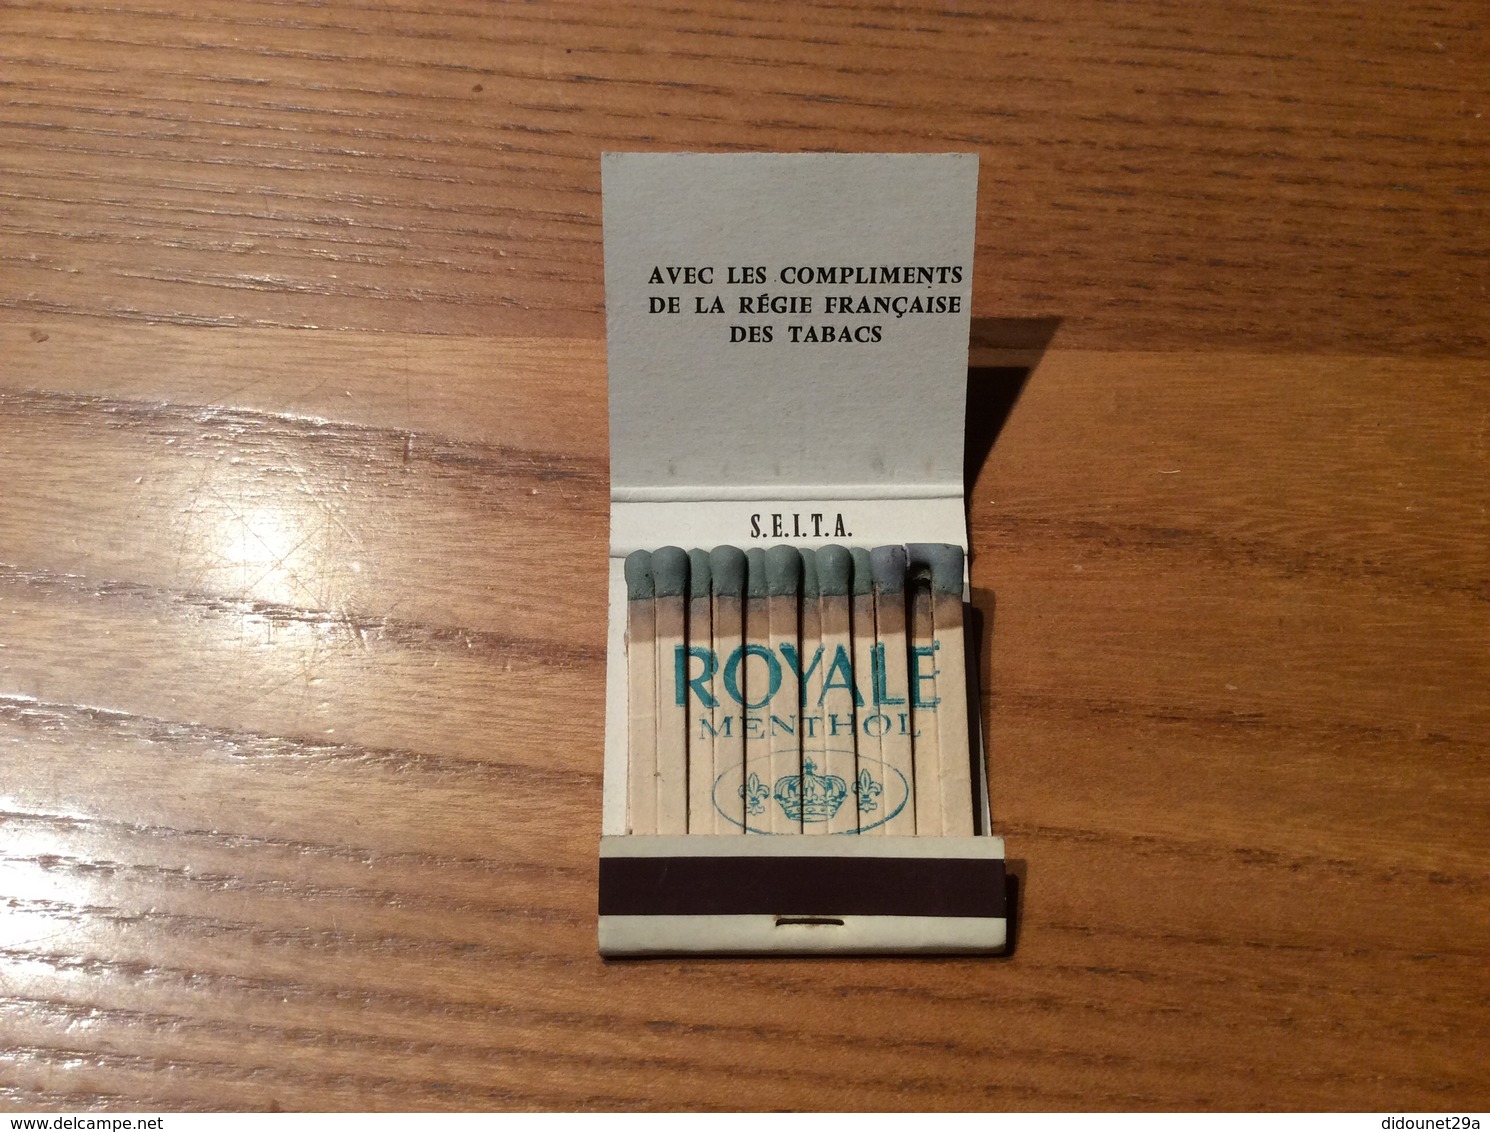 Pochette D'allumette * Seita Spea « ROYALE MENTHOL - Bien Frappée » (inscriptions Sur Allumettes) (cigarettes) - Boites D'allumettes